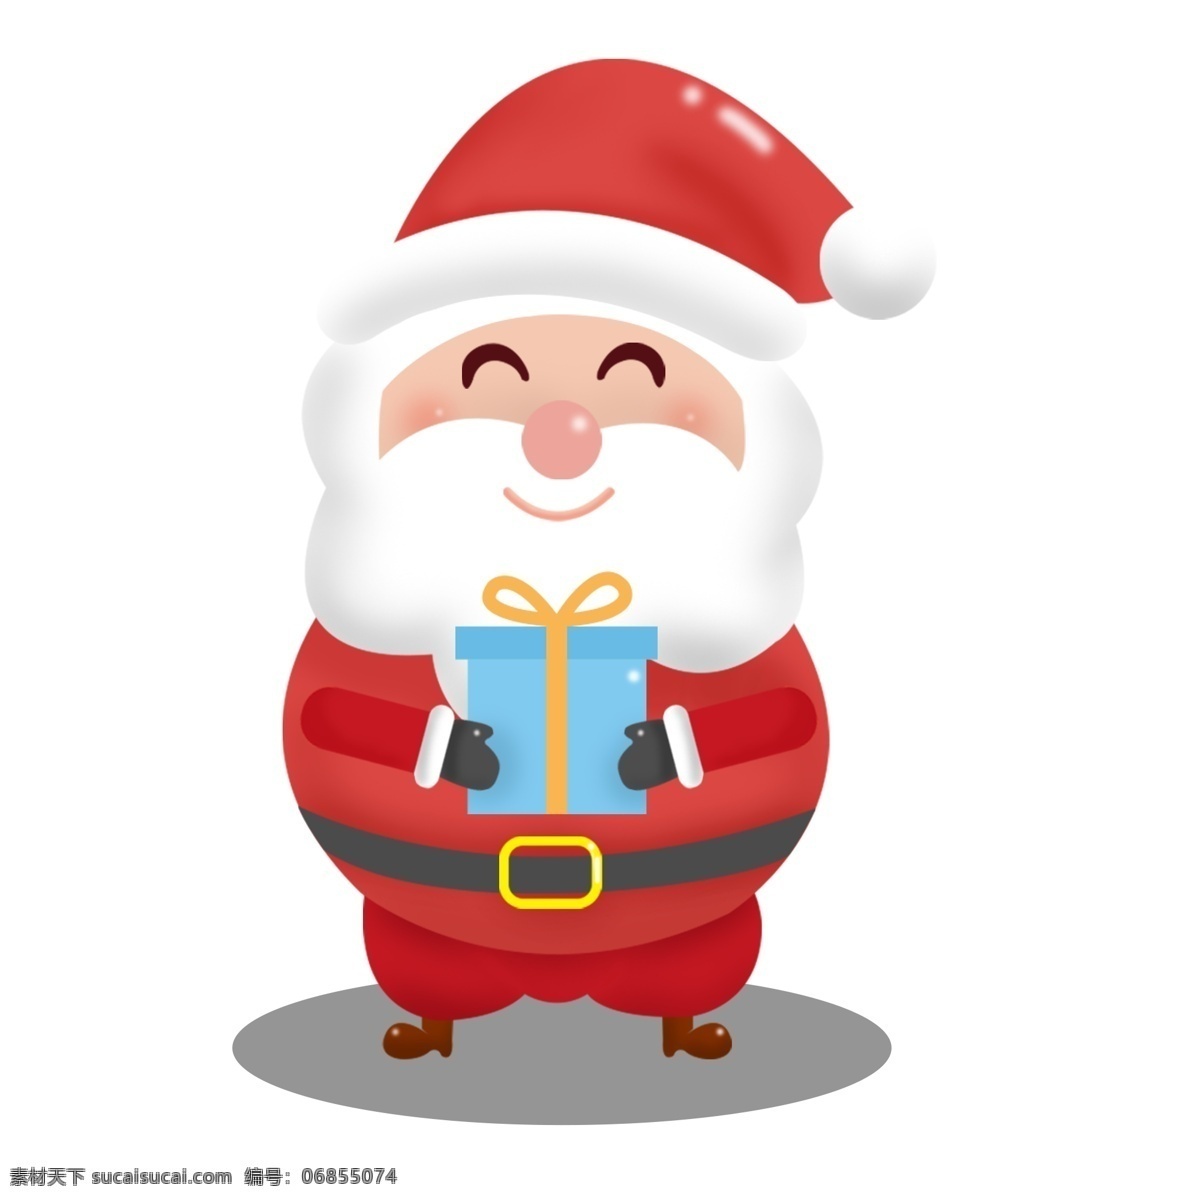 圣诞老人 卡通 可爱 商用 元素 礼物 和蔼 微笑 儿童 可商用